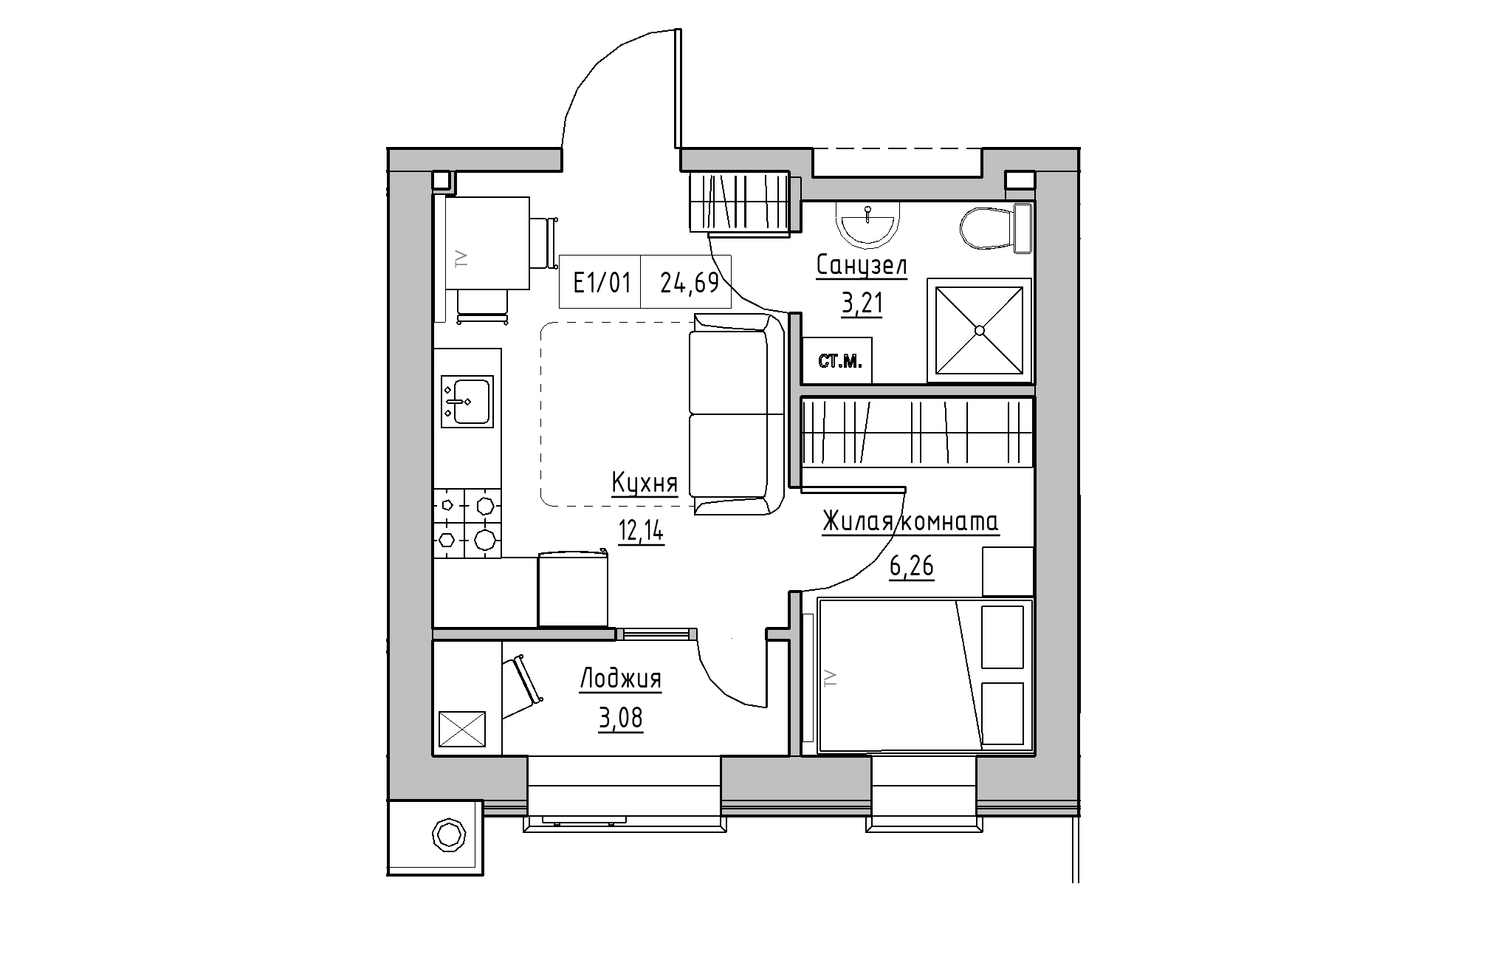 Планировка 1-к квартира площей 24.69м2, KS-013-05/0015.